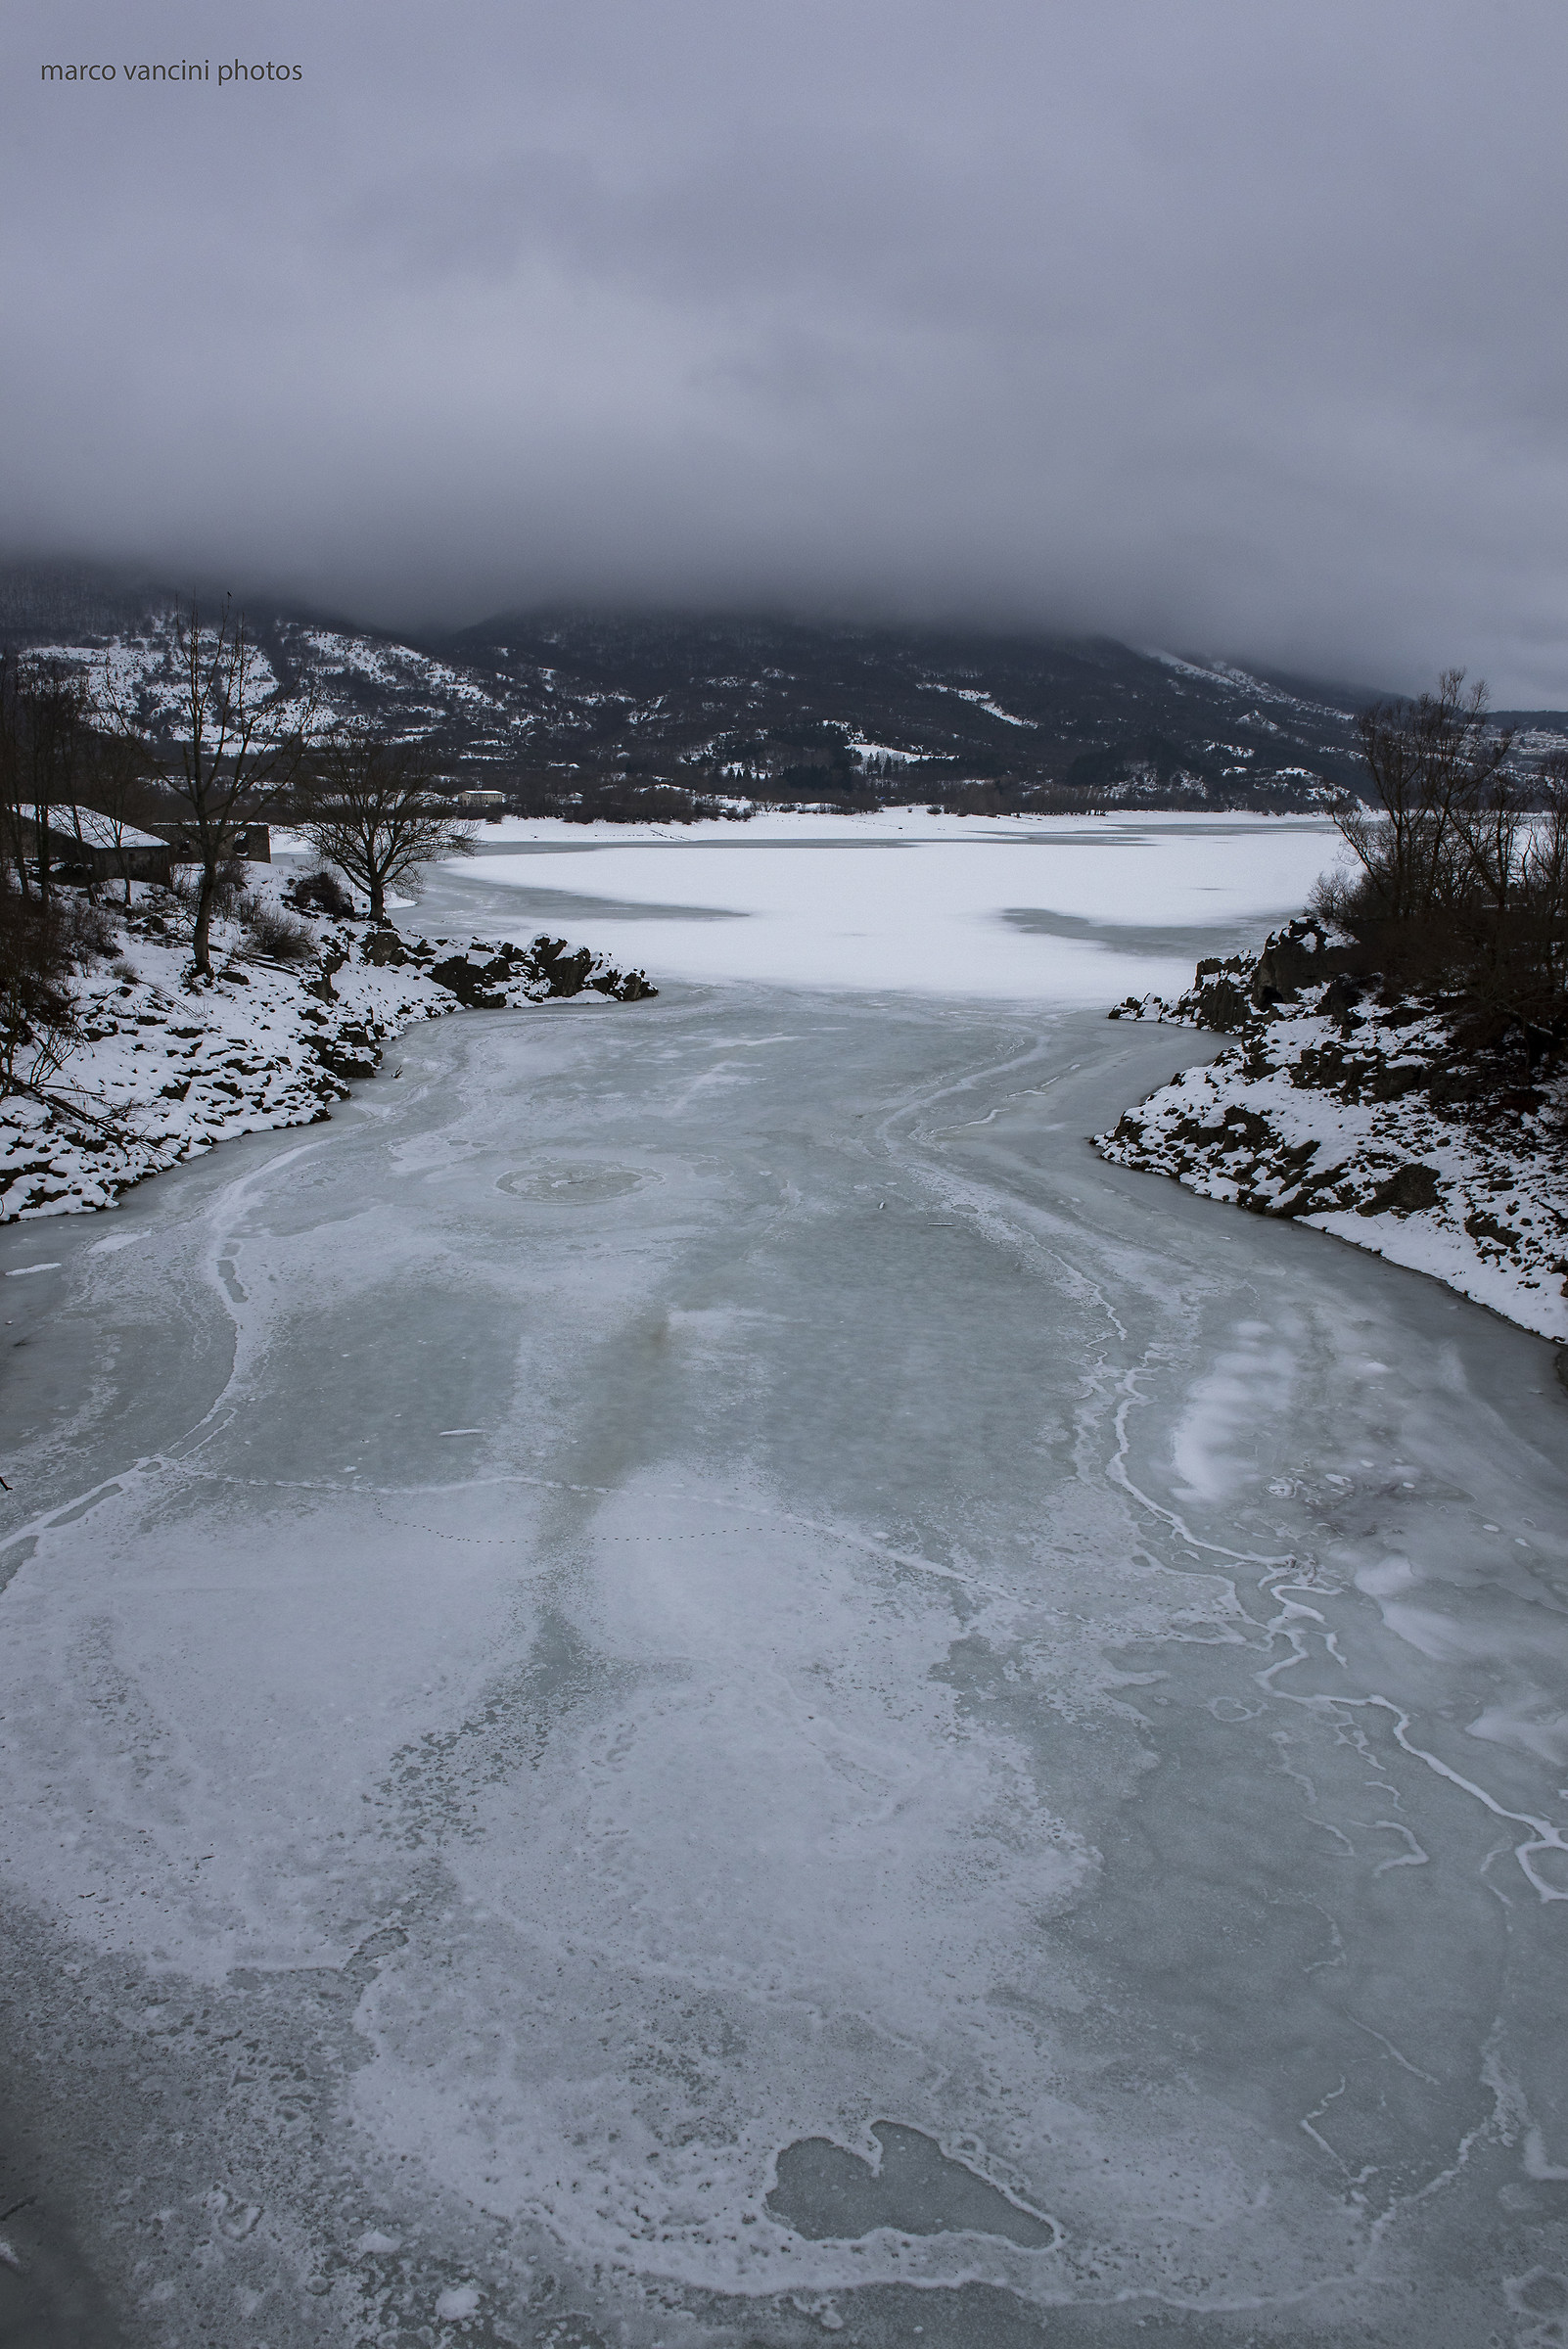 The frozen lake...